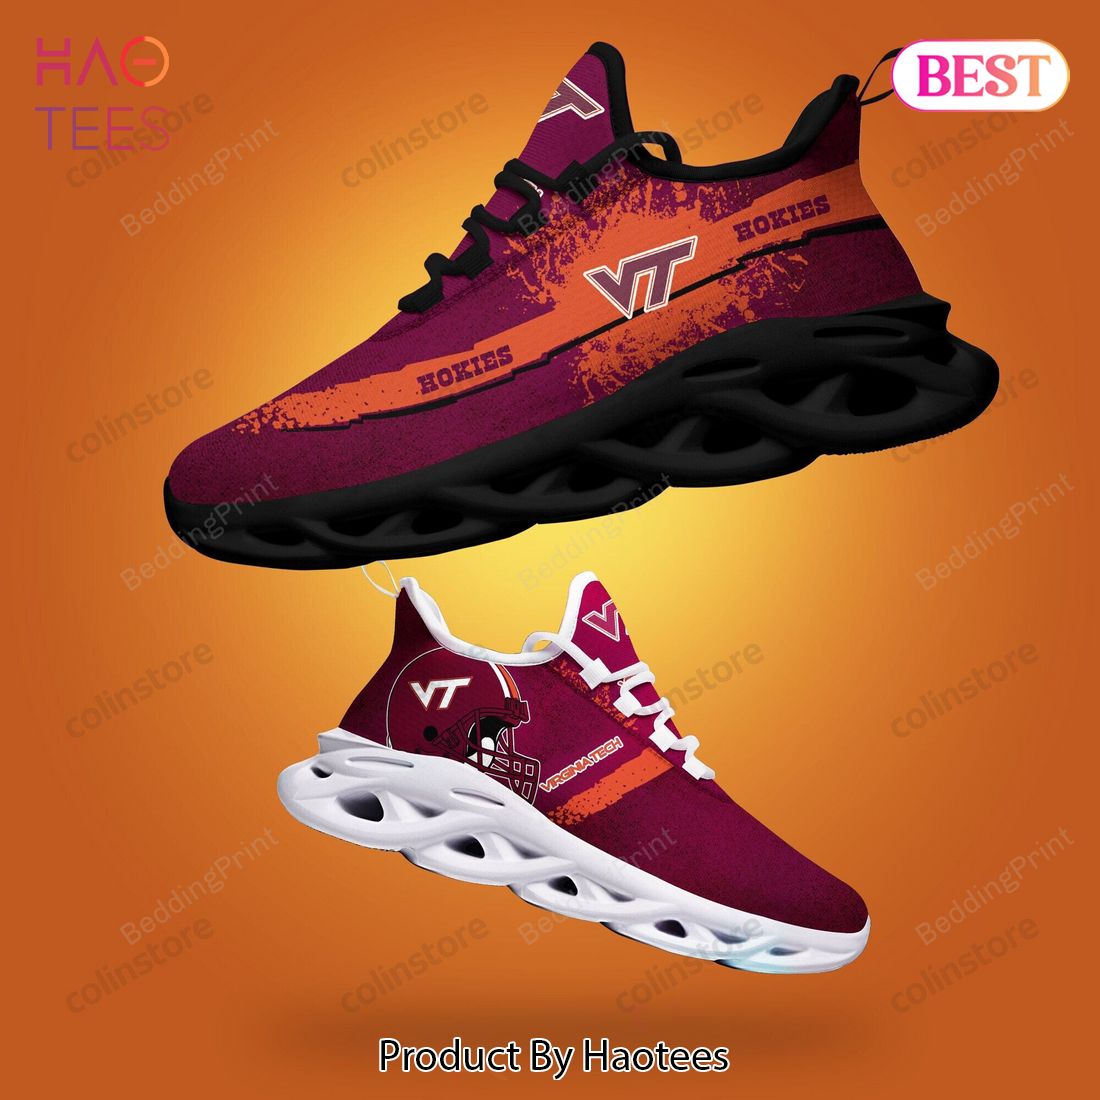 Virginia Tech Hokies NCAA Max Soul Shoes